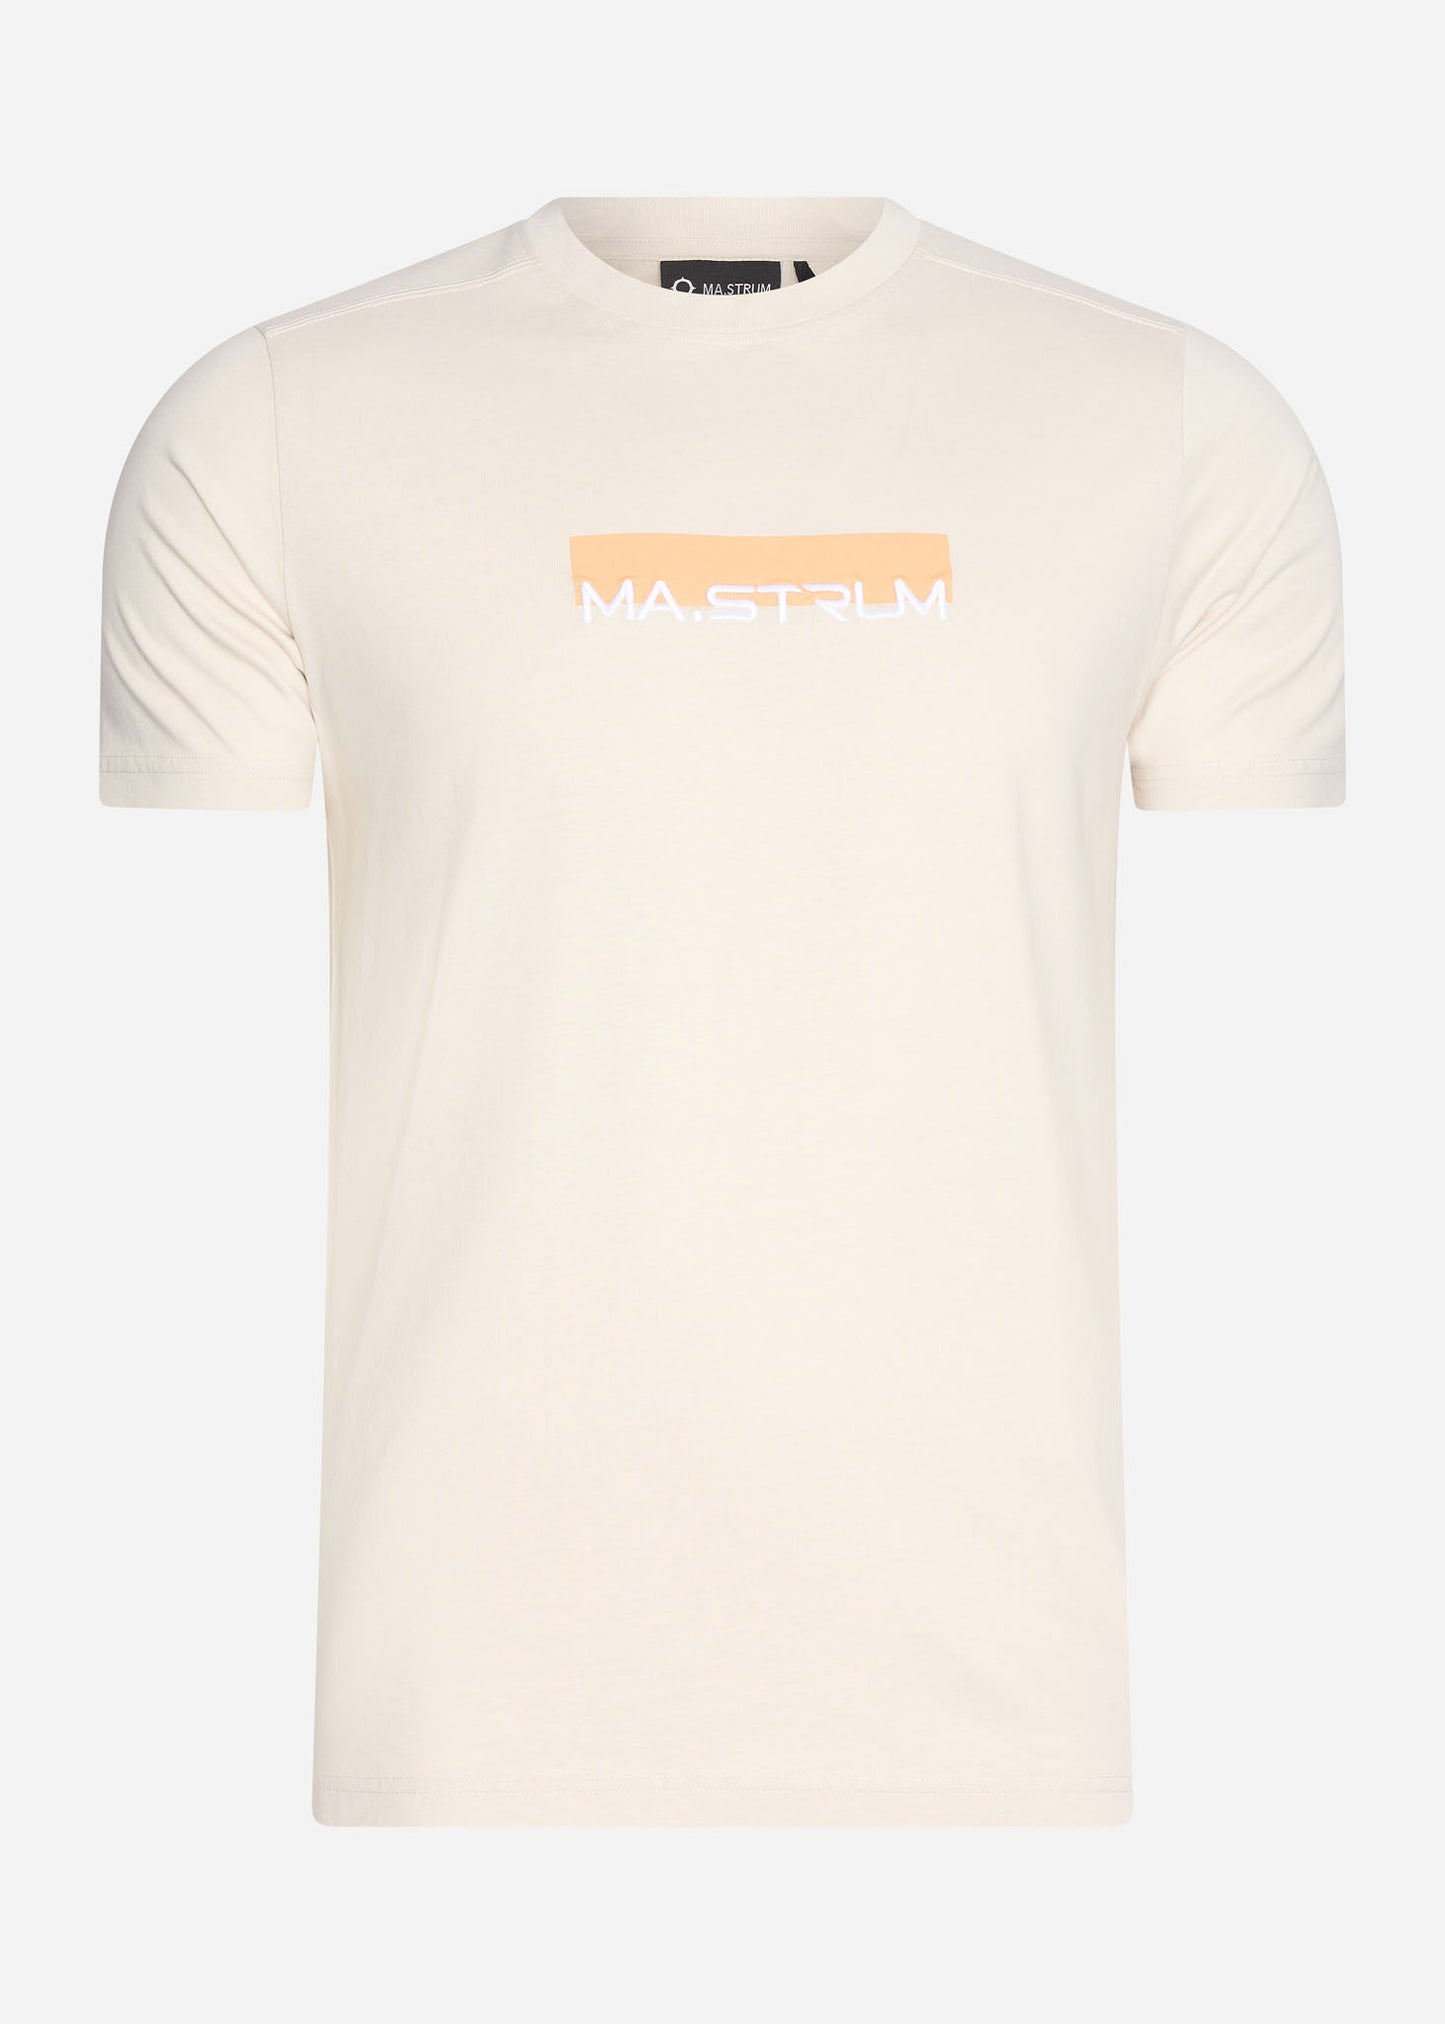 MA.Strum T-shirts  MA.Strum block print tee - aluminium 